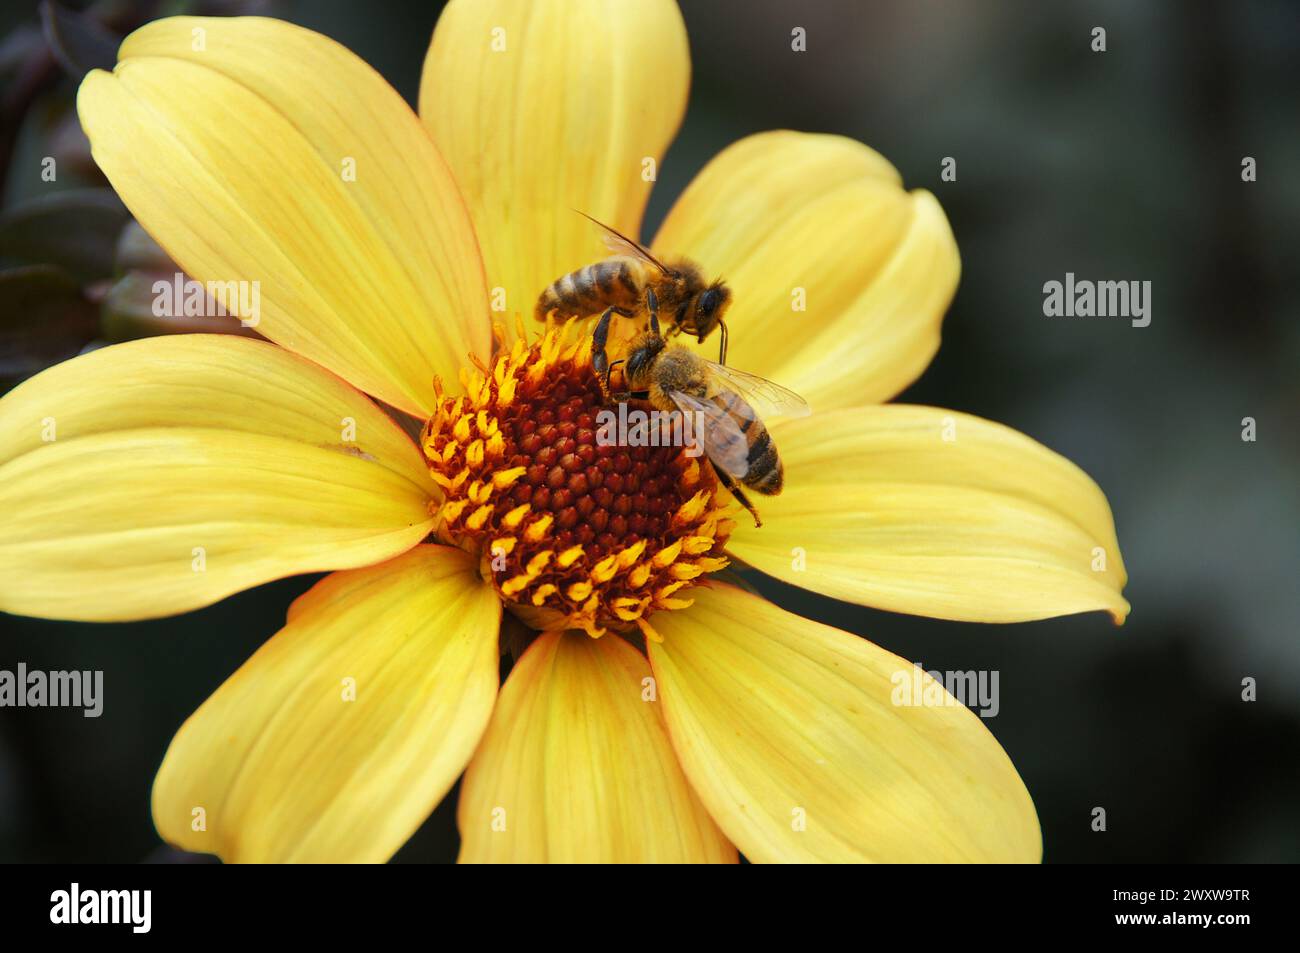 Deux abeilles assises sur la fleur, ramassant le nectar Banque D'Images